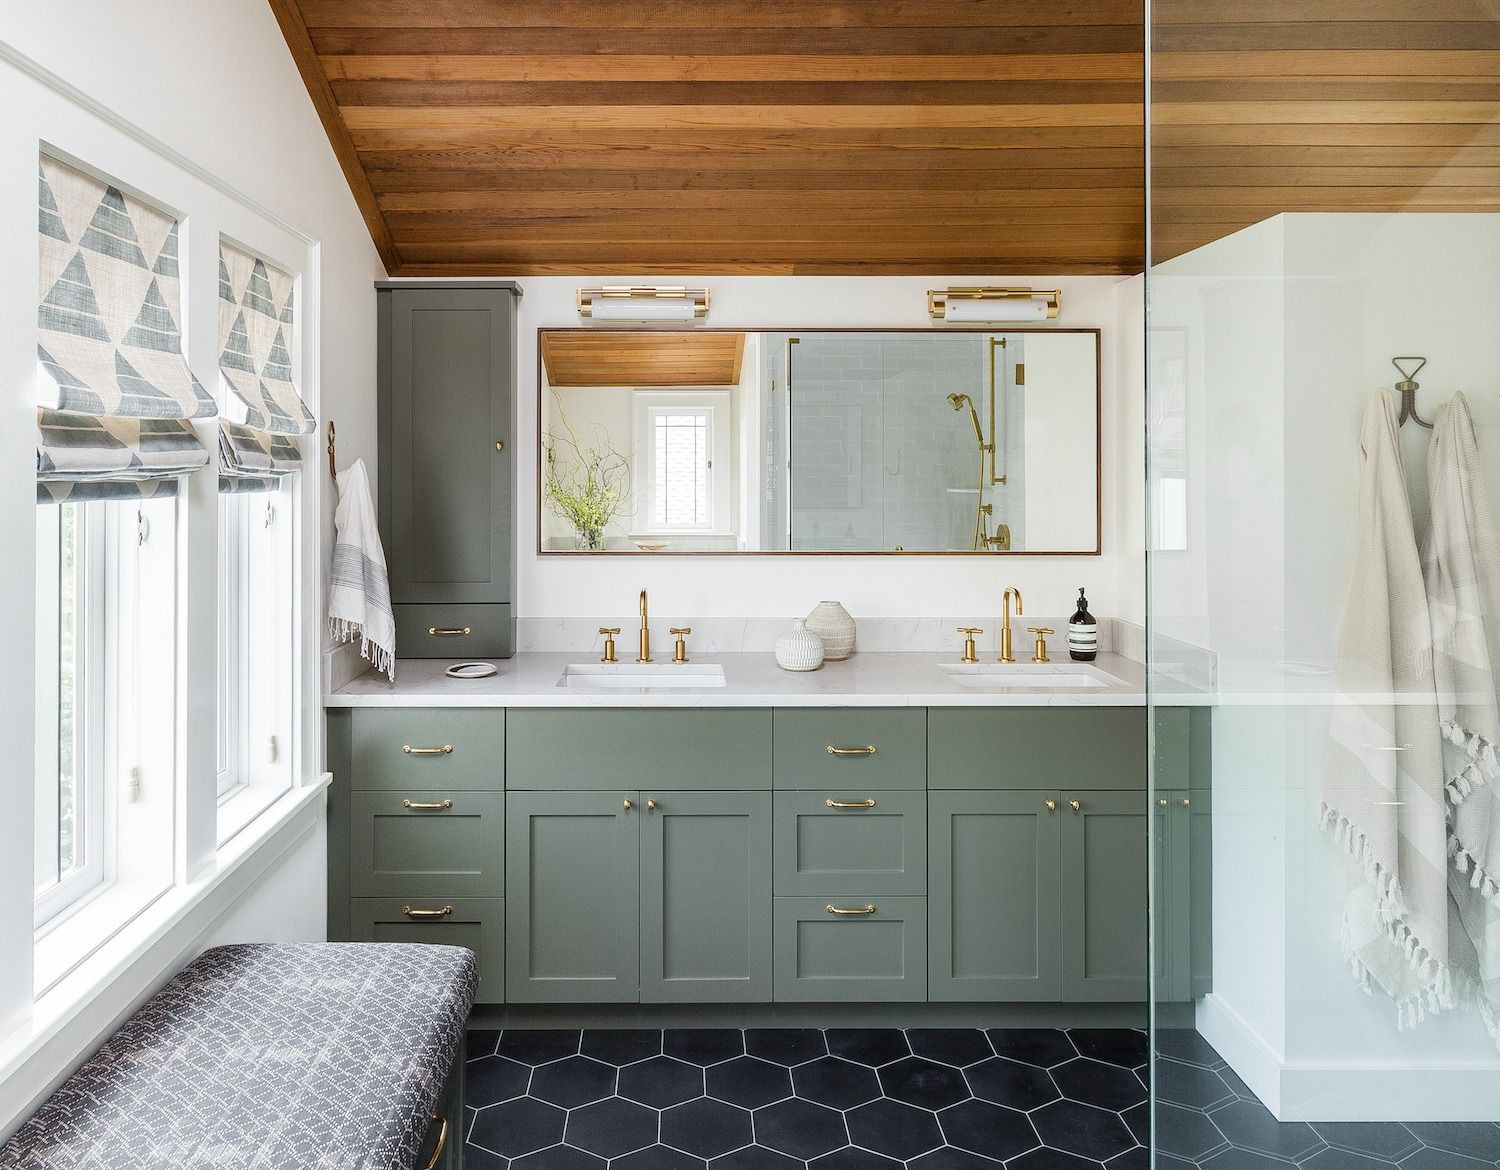 Bathroom Mirror Ideas for Every Style - Bathroom Wall Decor